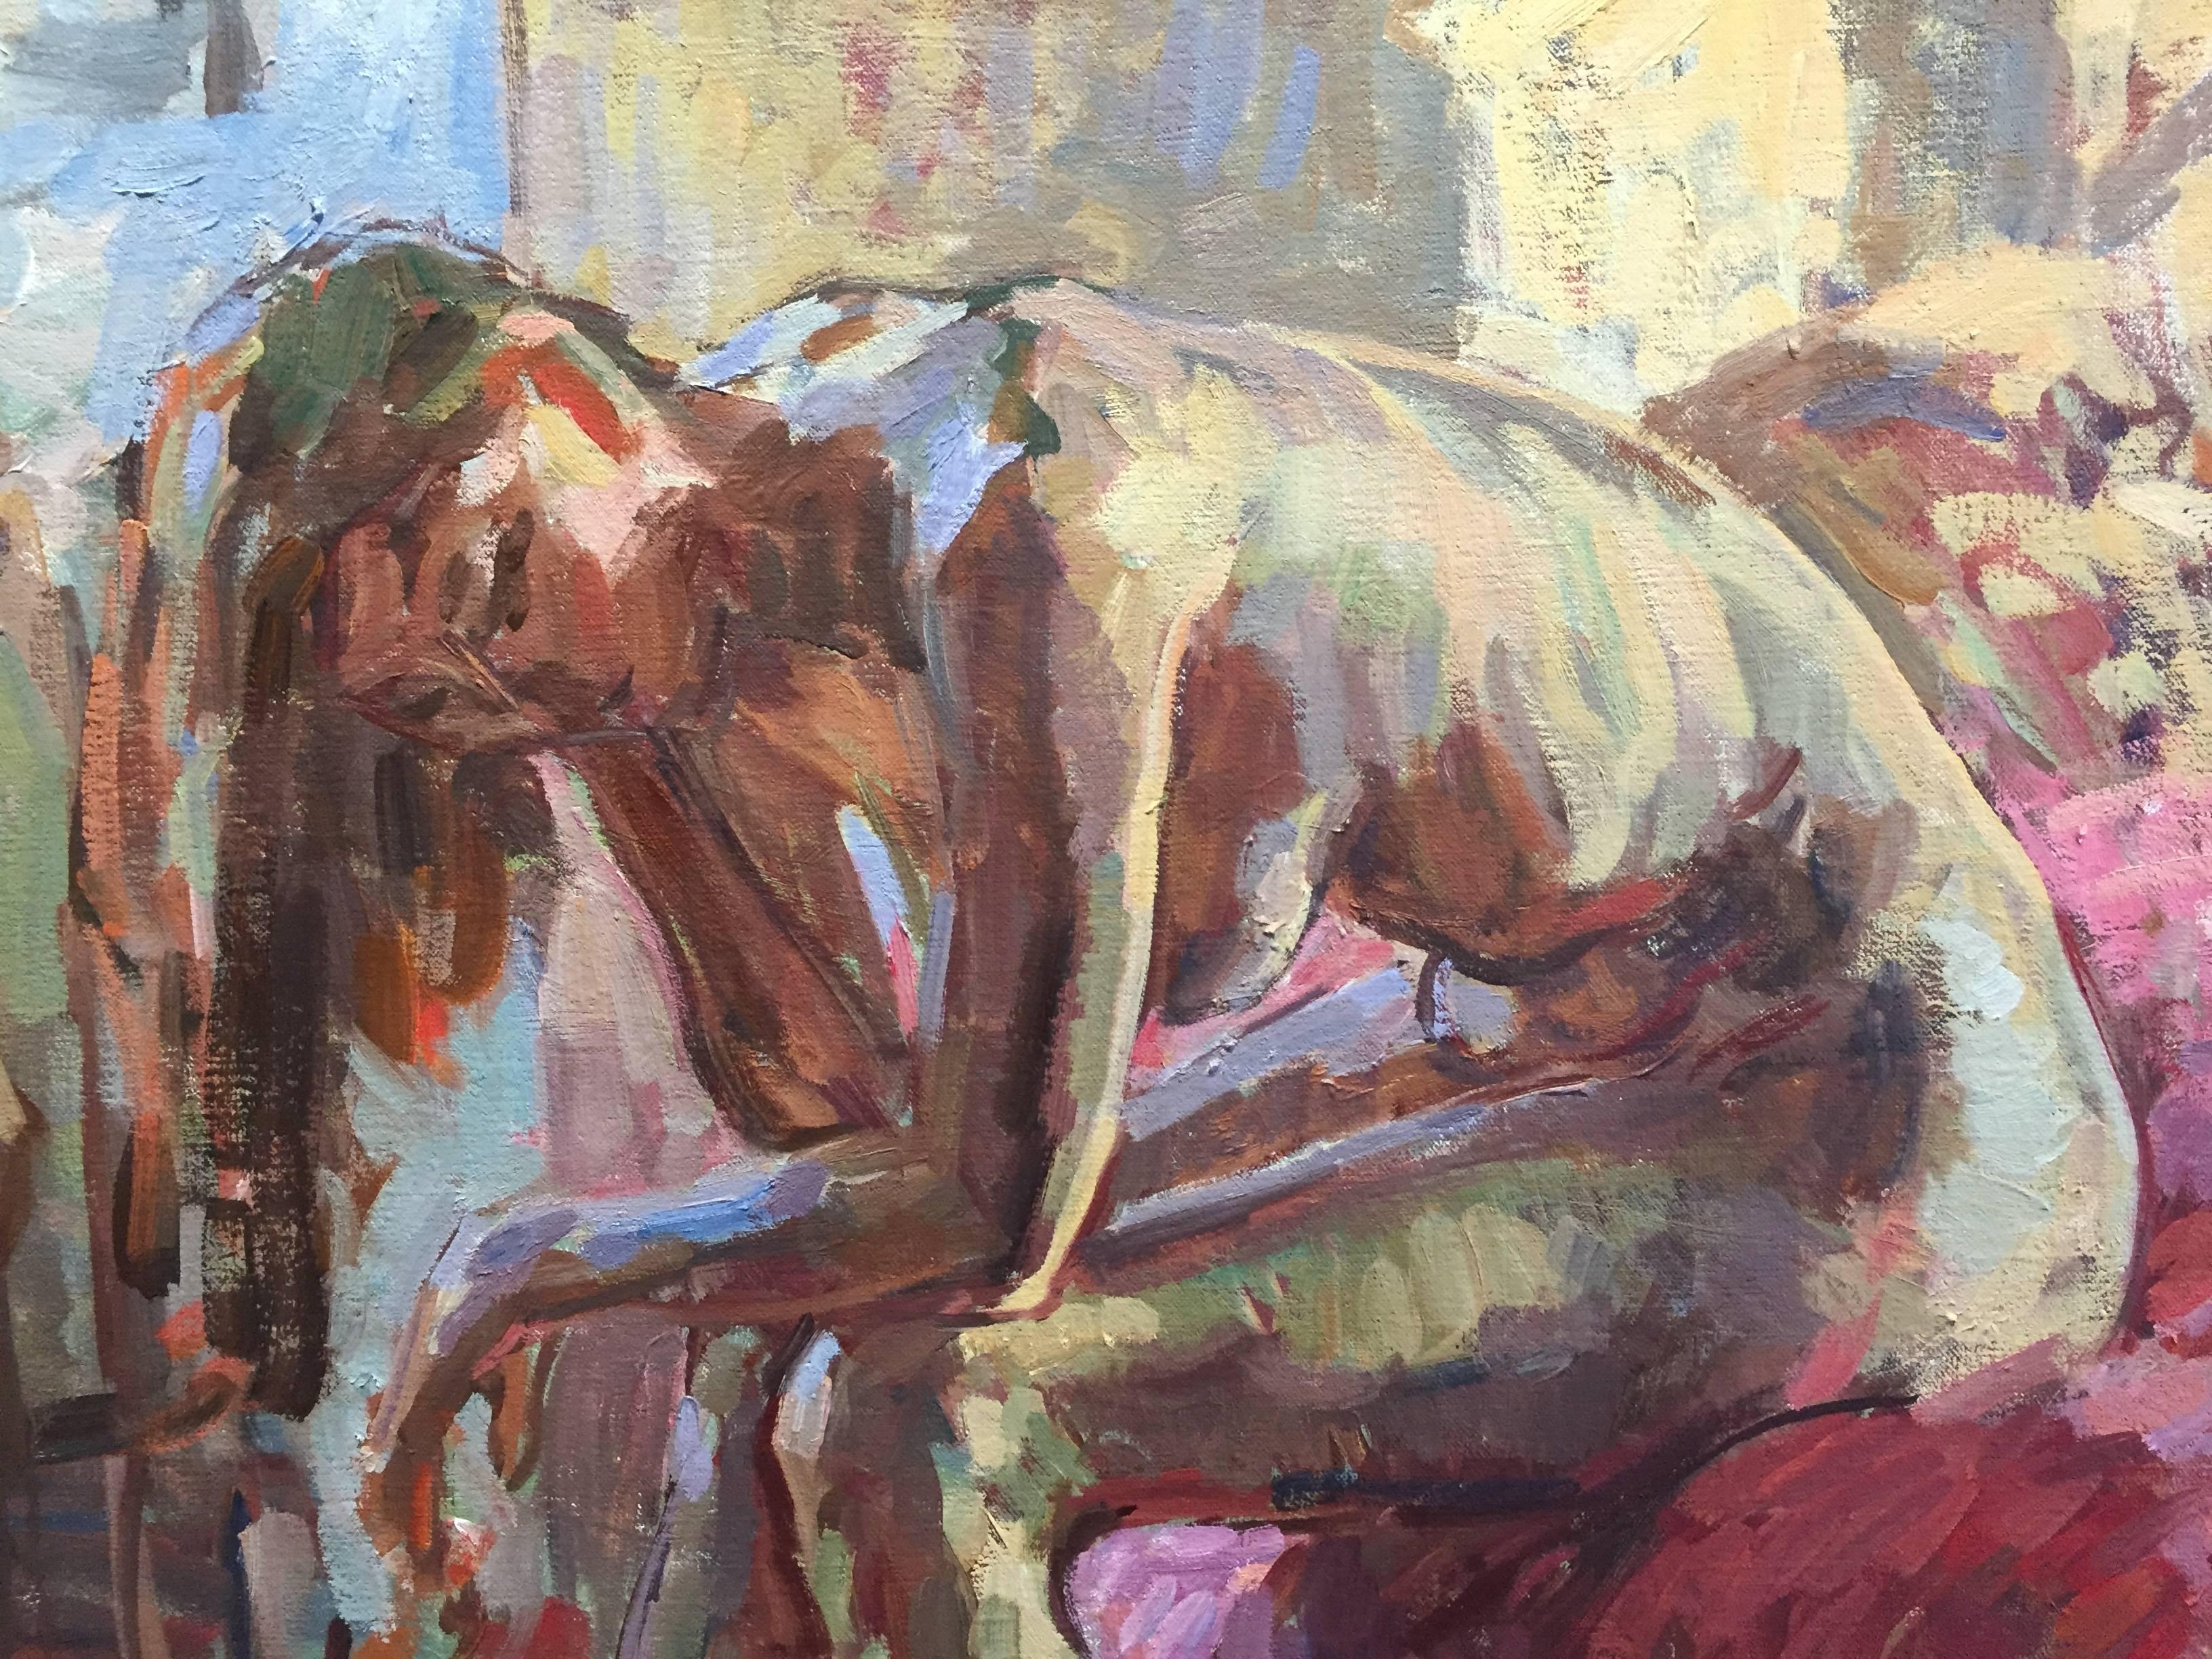 Ein Ölgemälde einer nackten weiblichen Figur, die auf einem Bett sitzt, die Brust über die Knie gebeugt, die Hand auf dem Kopf, scheinbar gelangweilt. Die Figur ist von rosa Farbtönen umgeben, die durch absichtlich eingesetzte Dekorationsstoffe